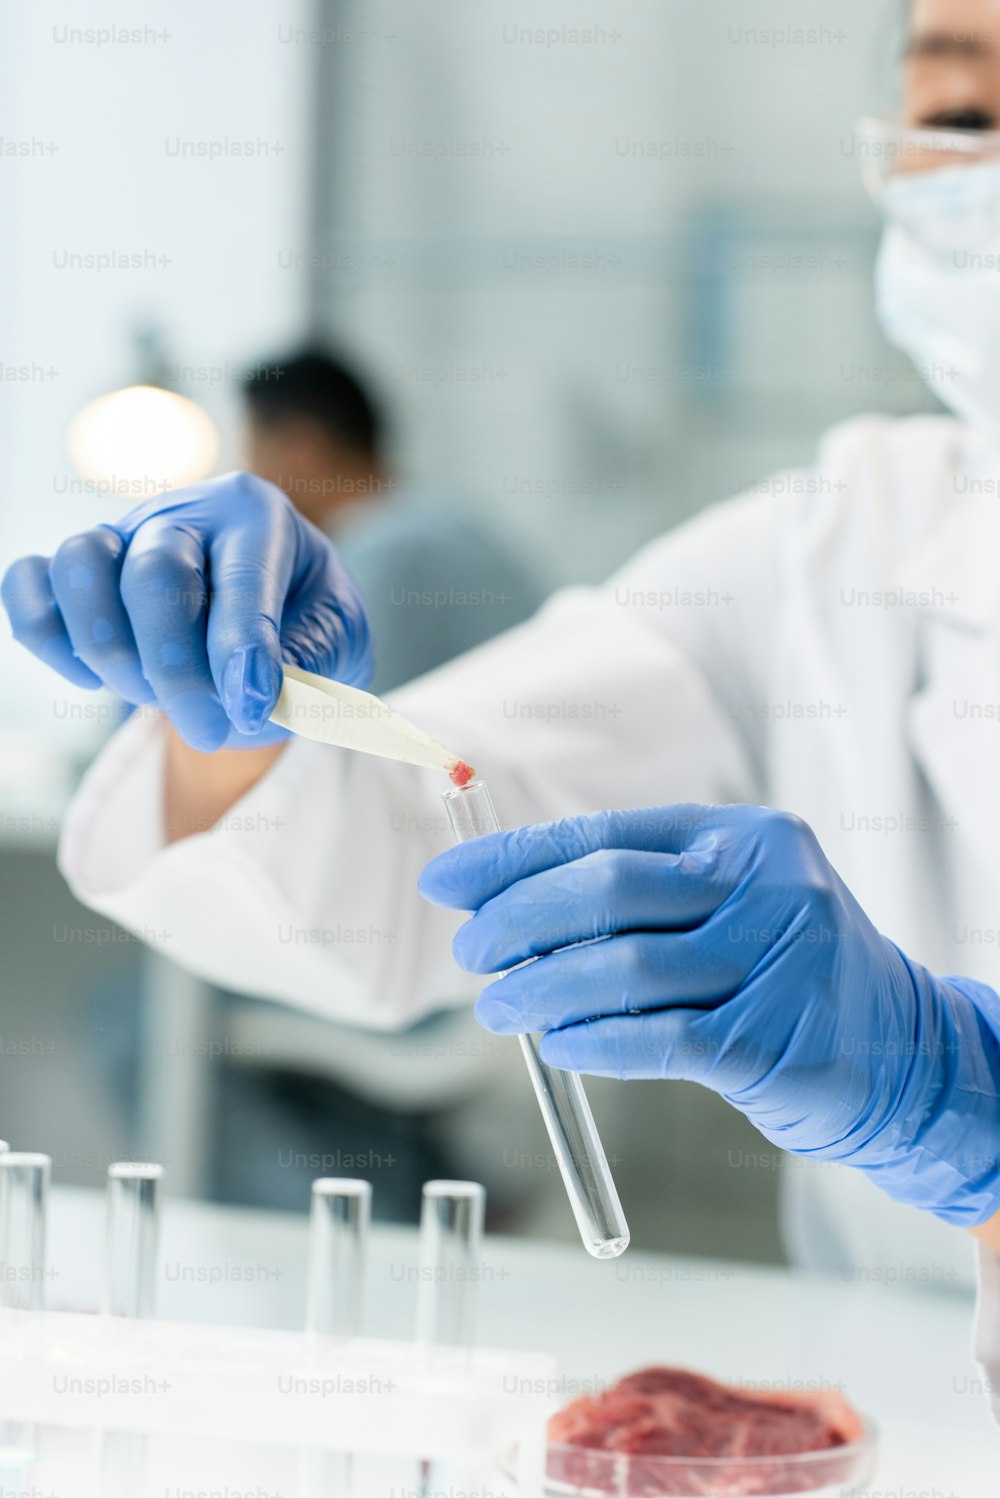 Behandschuhte Hände eines zeitgenössischen Forschers, der während eines Laborexperiments winzige Proben rohen Gemüsefleisches in eine Flasche steckt